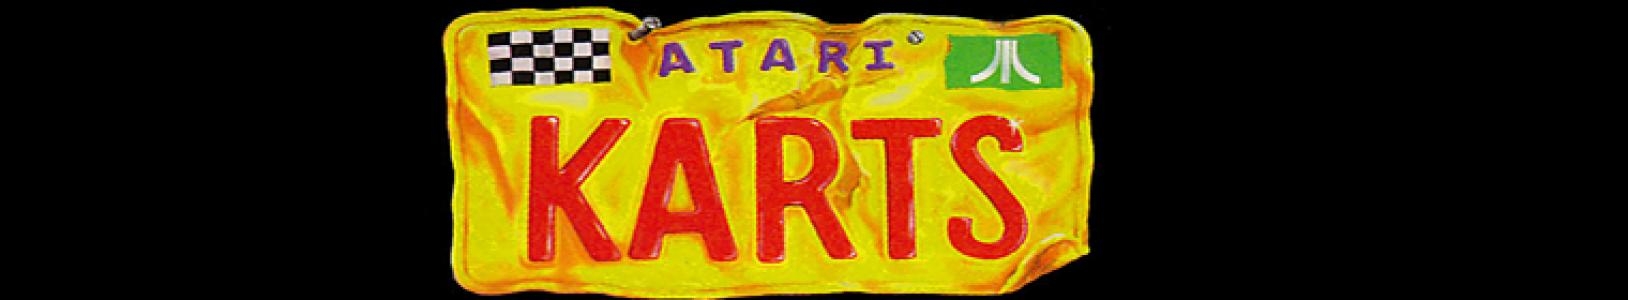 Atari Karts banner